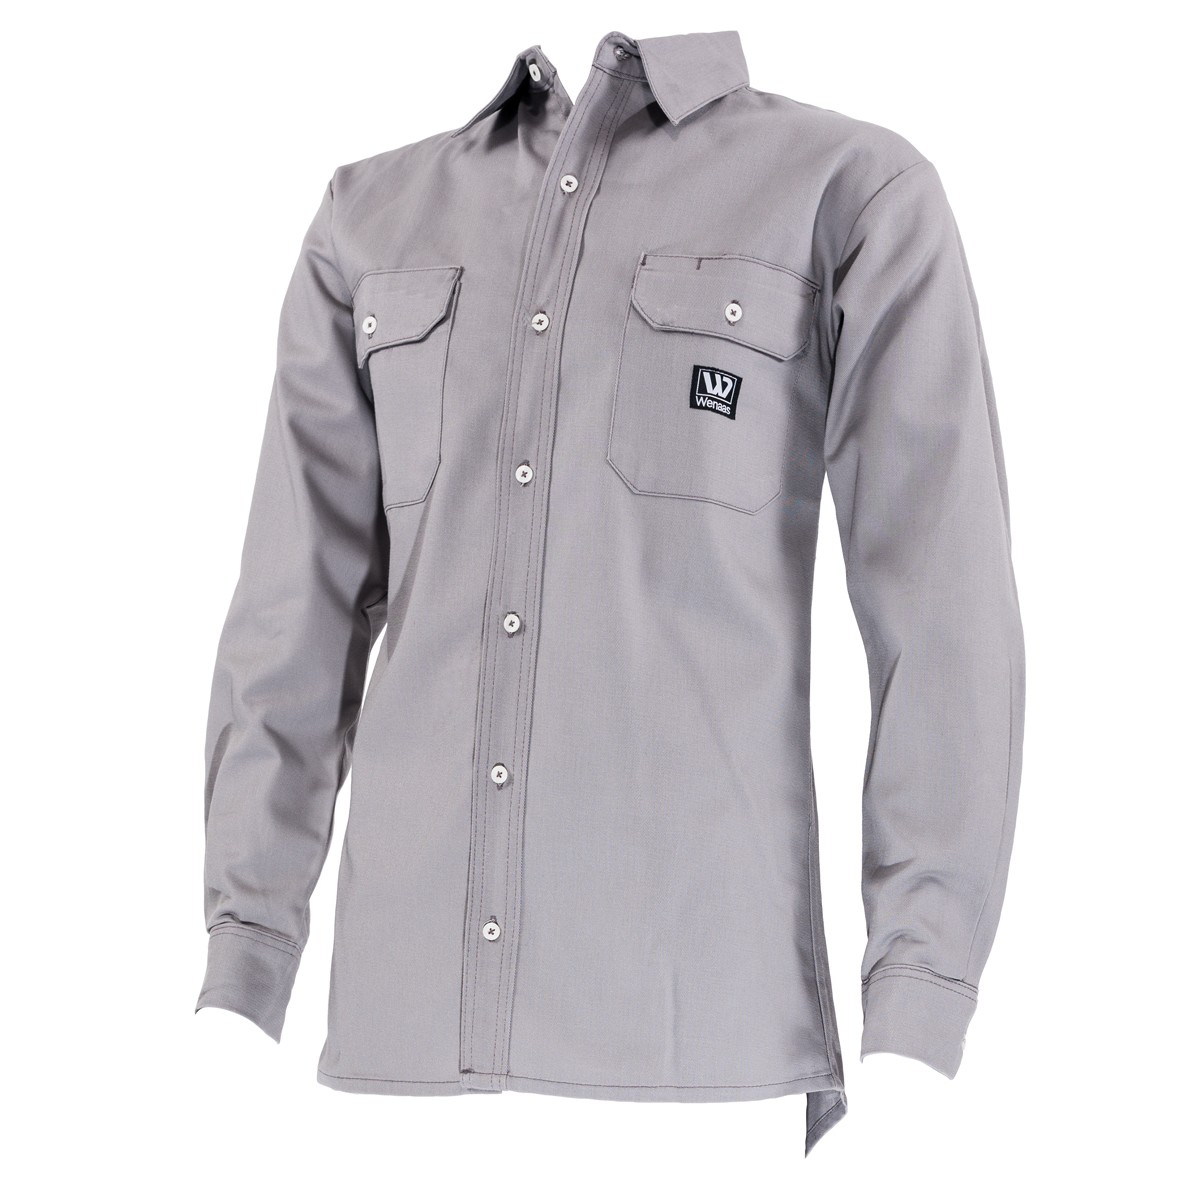 Non-Flame Retardant Shirt - Silver Grey